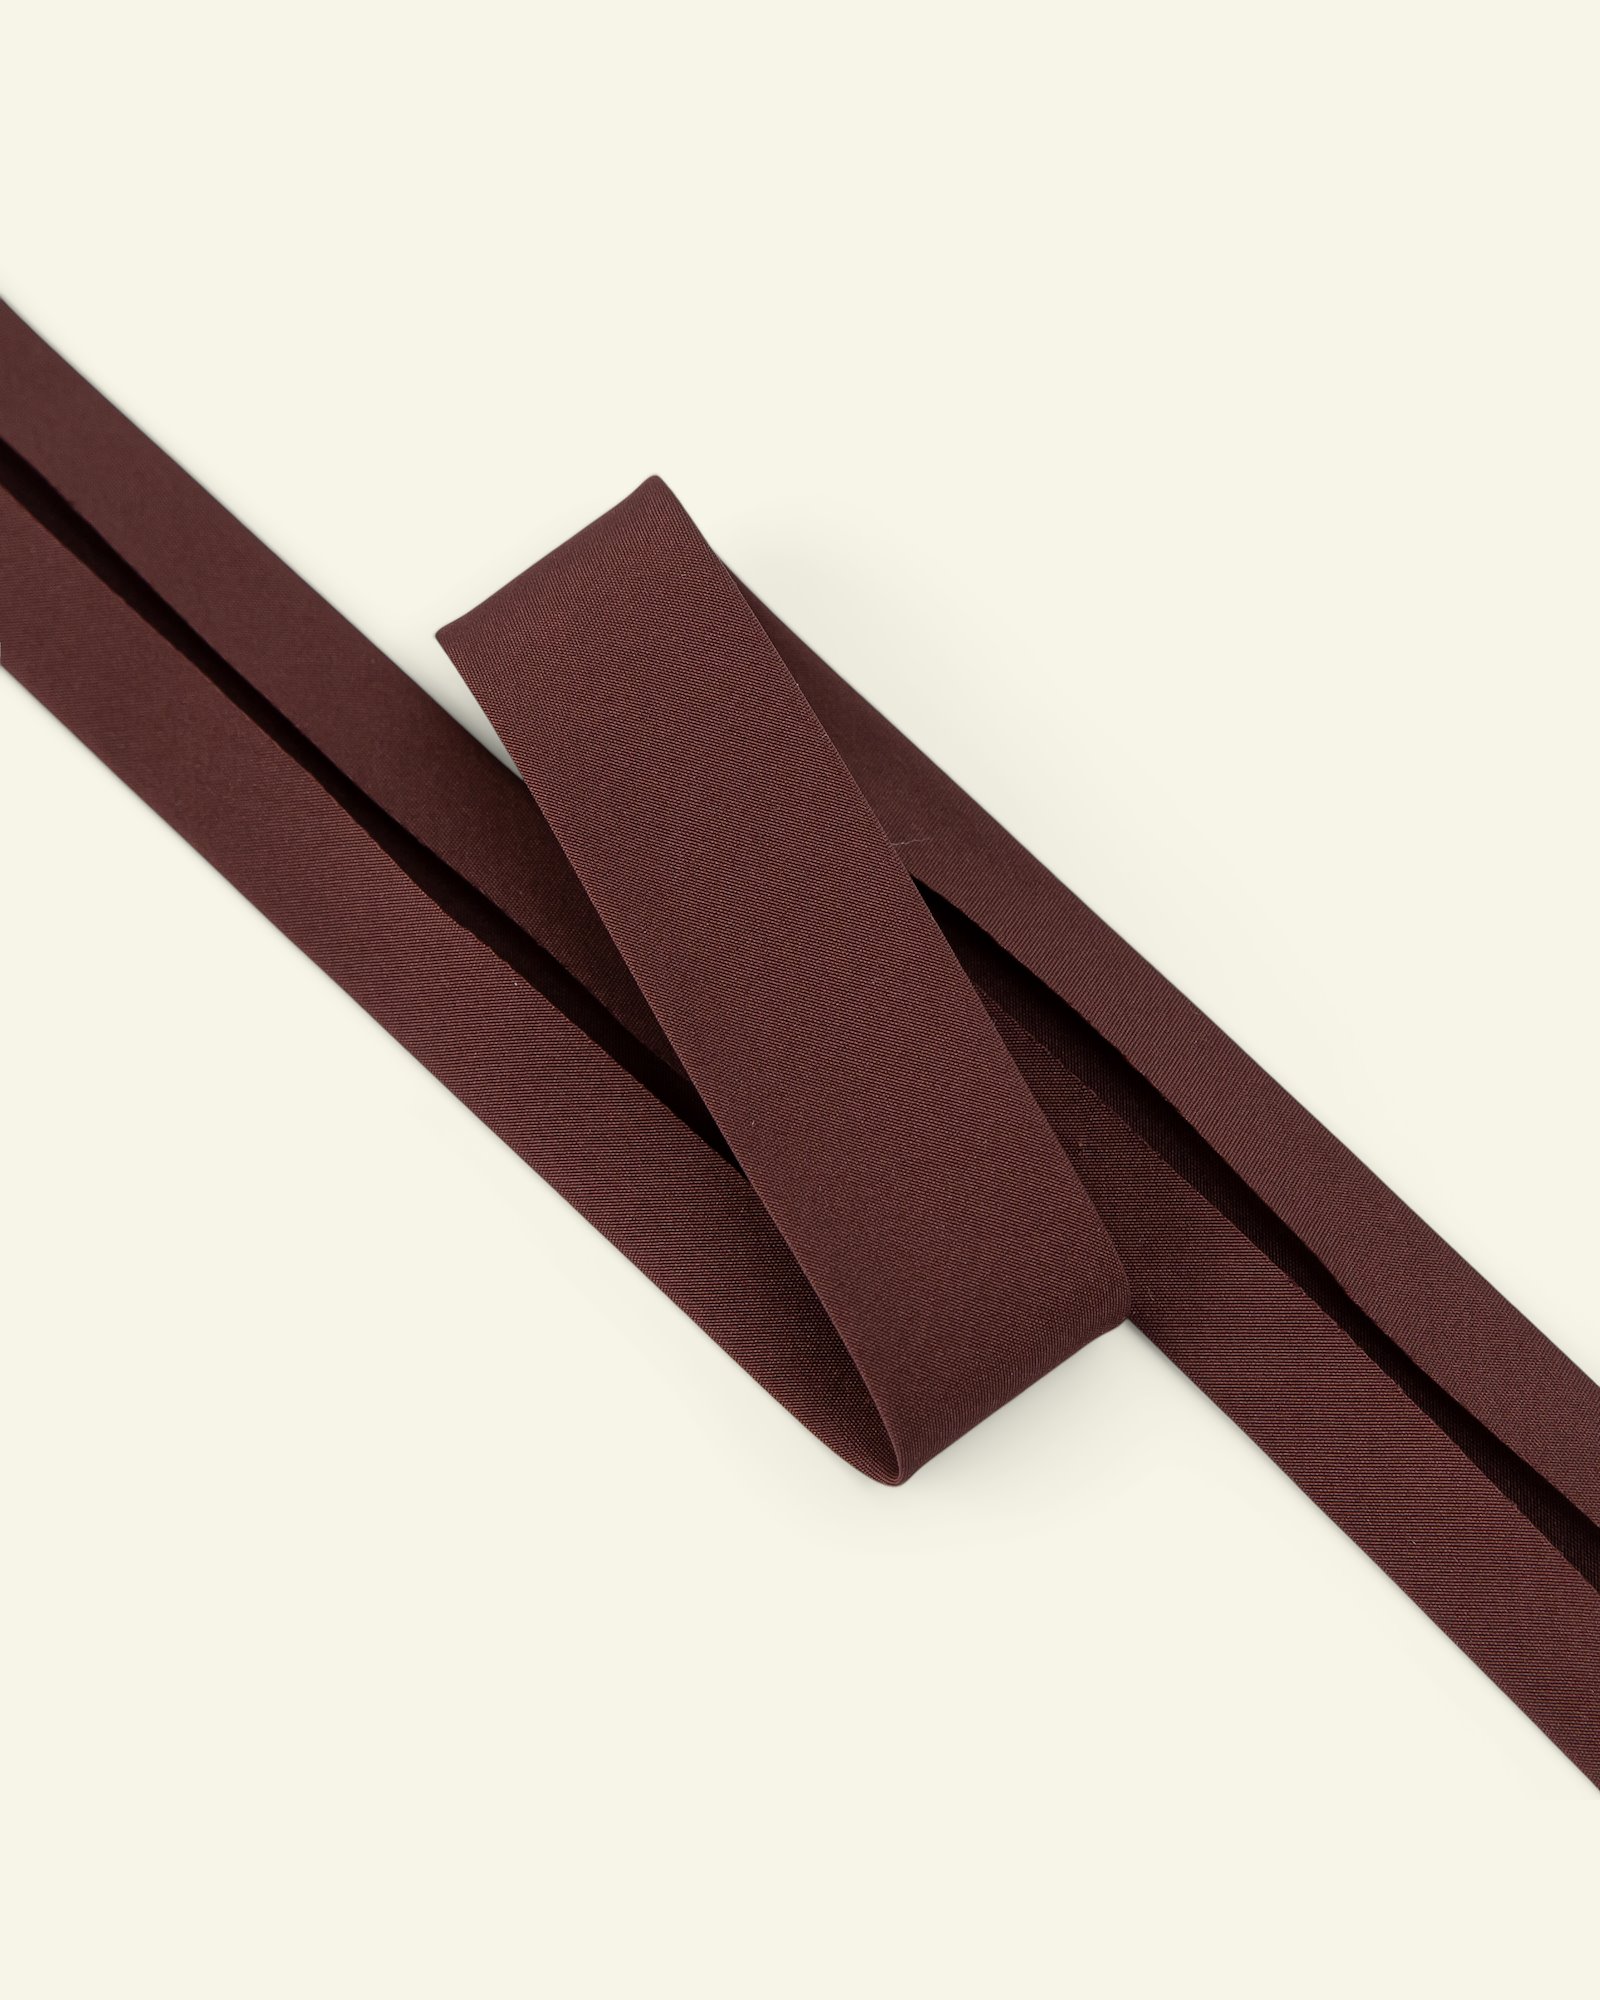 Polyester-Schrägband 18mm Braun, 4m 22259_pack